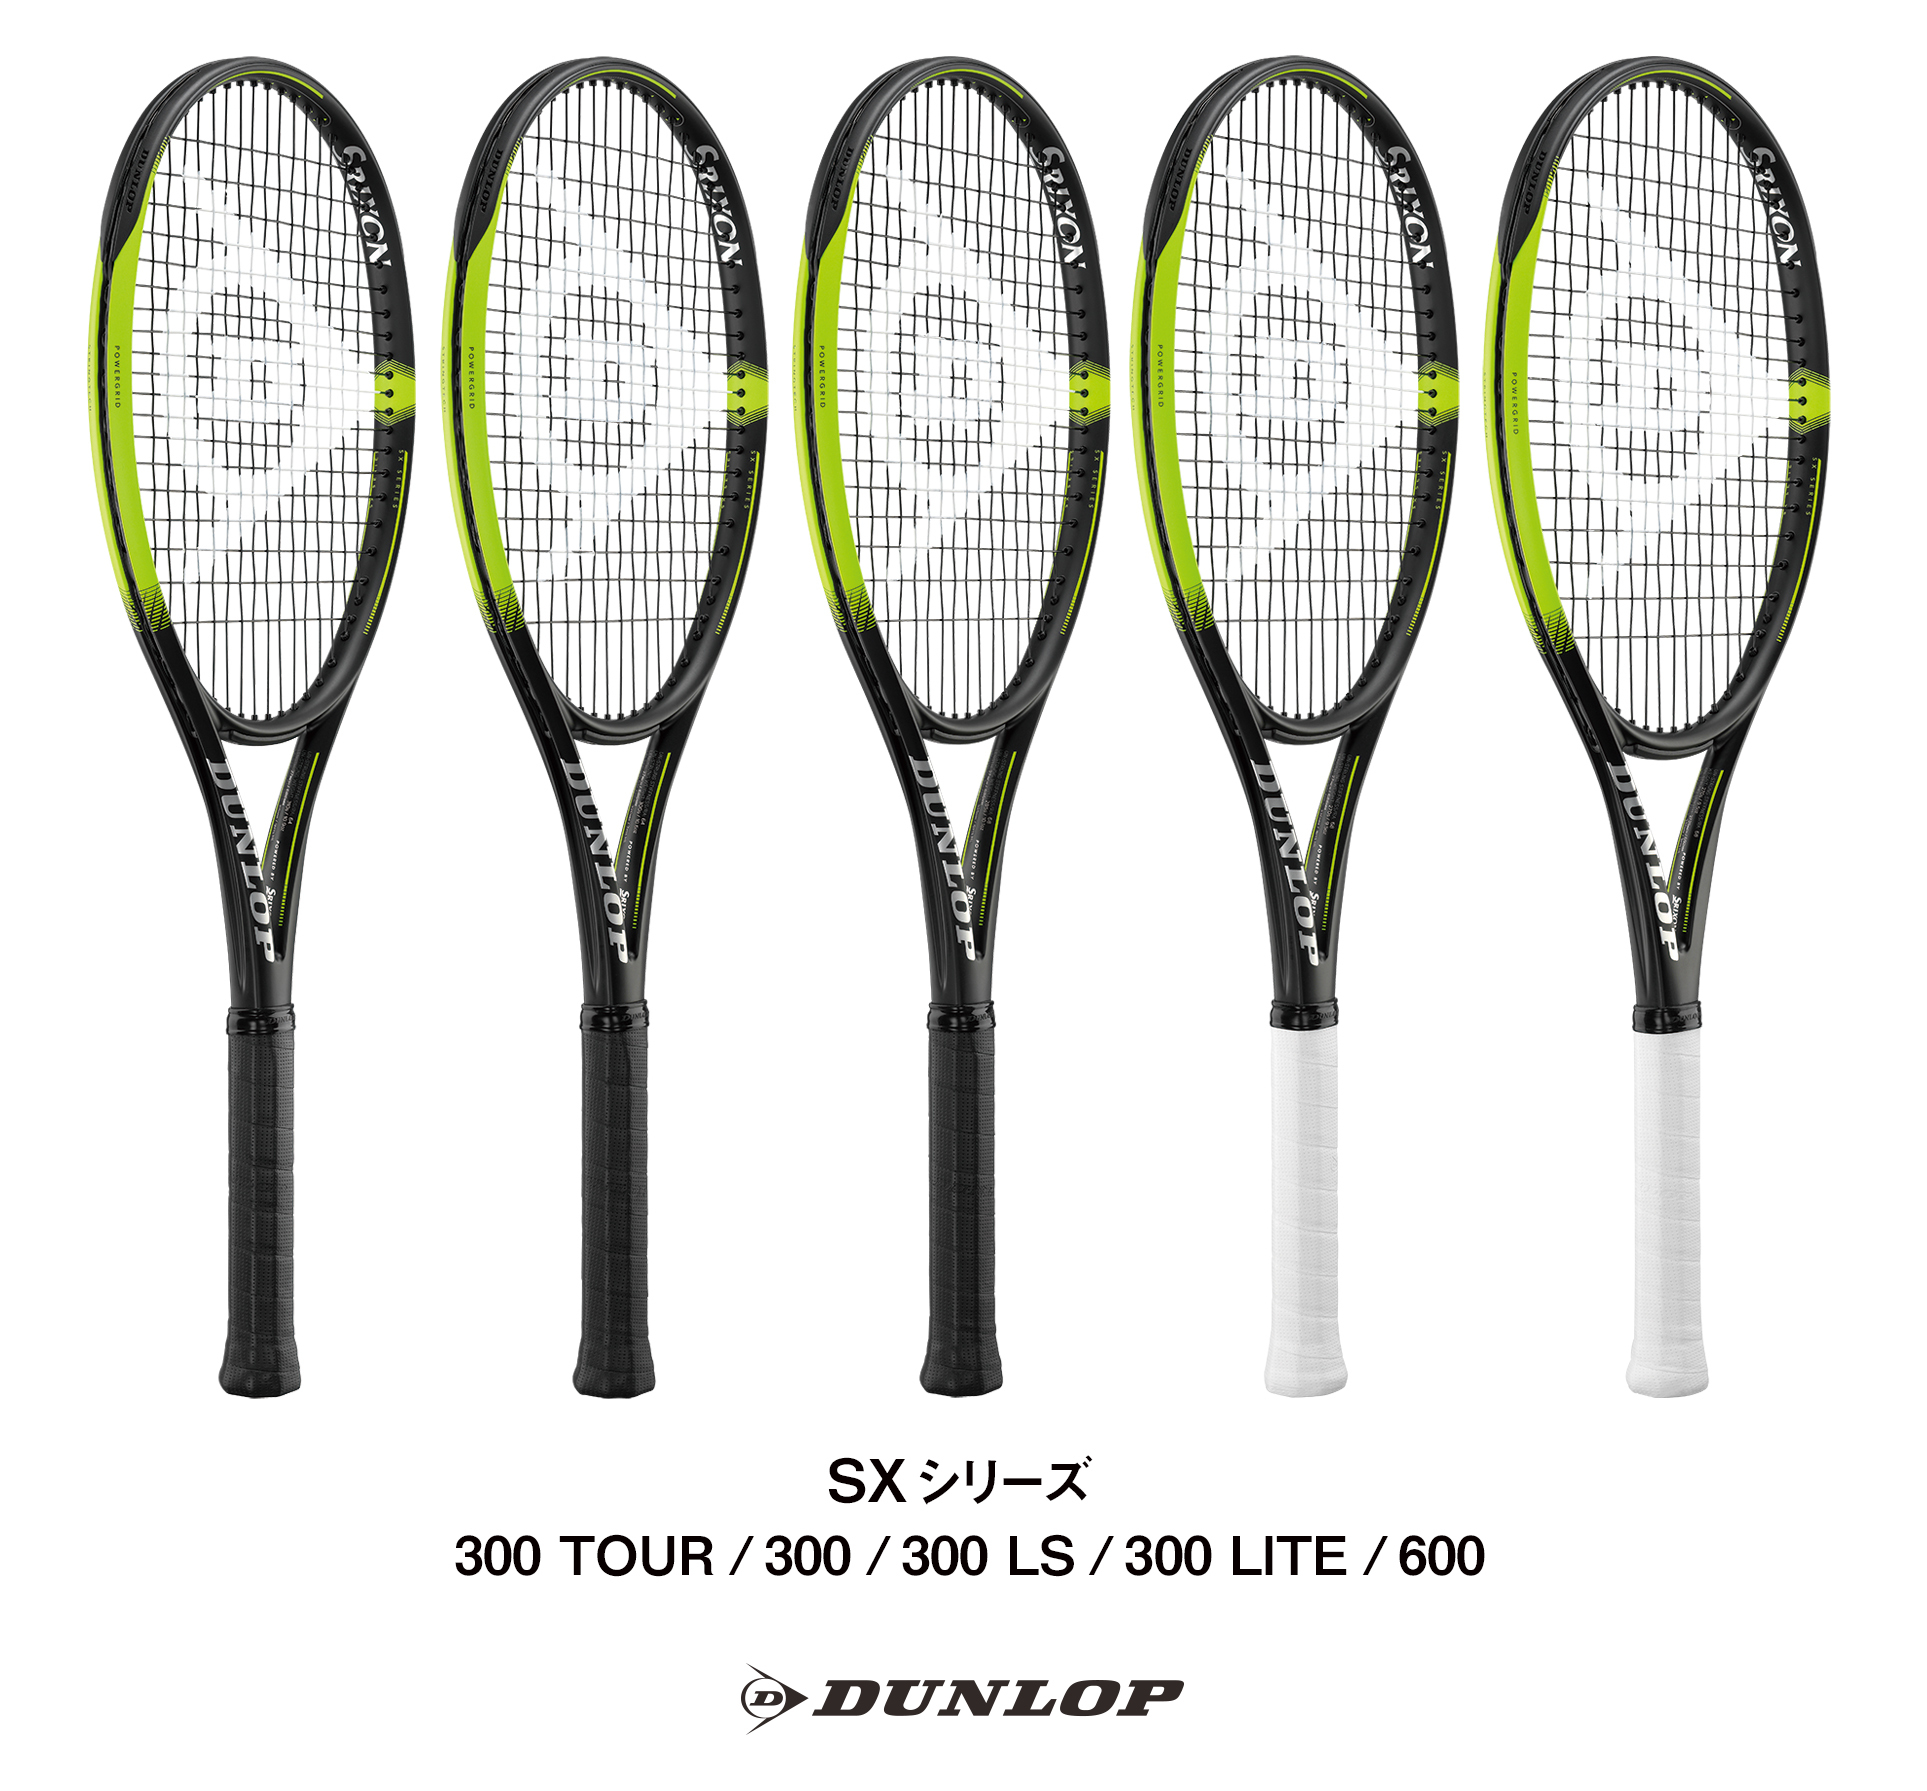 ダンロップテニスラケット「SX」シリーズ5機種を新発売｜住友ゴム工業株式会社のプレスリリース